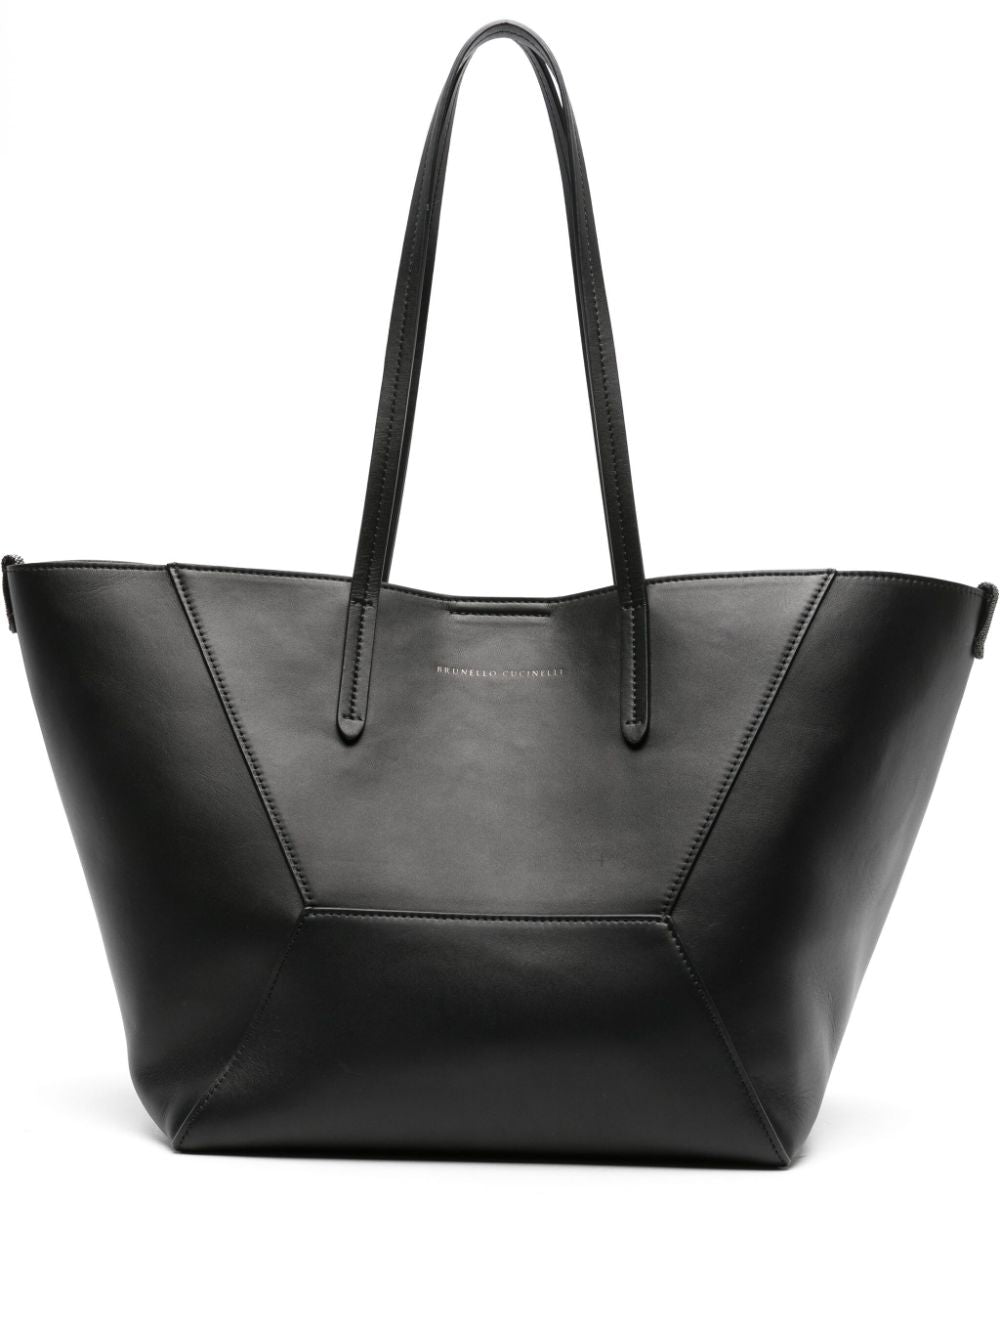 Brunello Cucinelli Leather Tote Handbag In Black